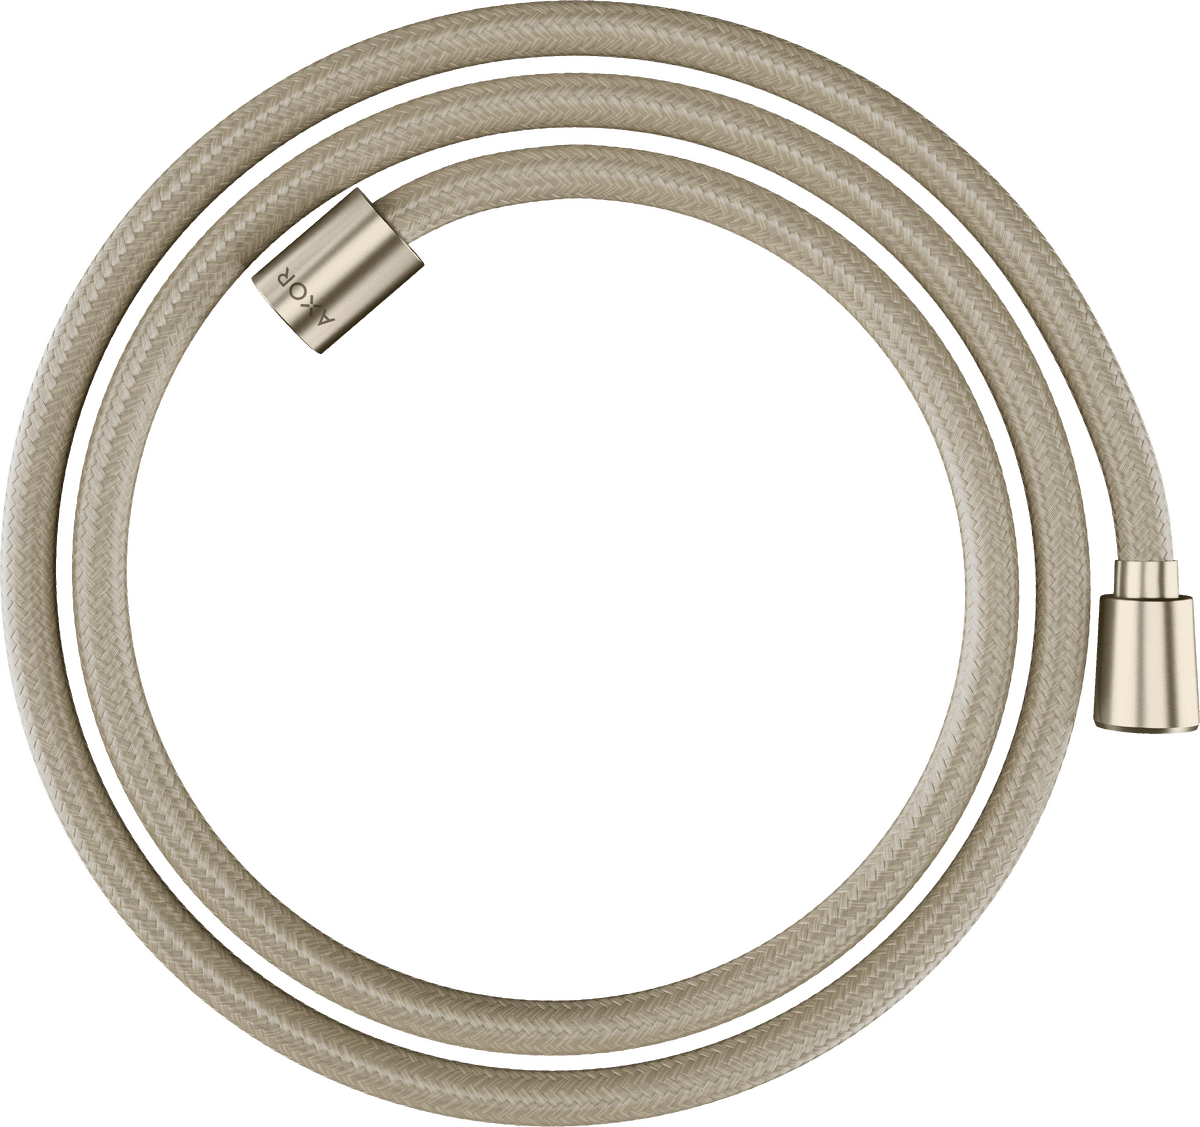 εικόνα του HANSGROHE AXOR ShowerSolutions Textile shower hose 1,60 m with conical and cylindrical nut #28259820 - Brushed Nickel